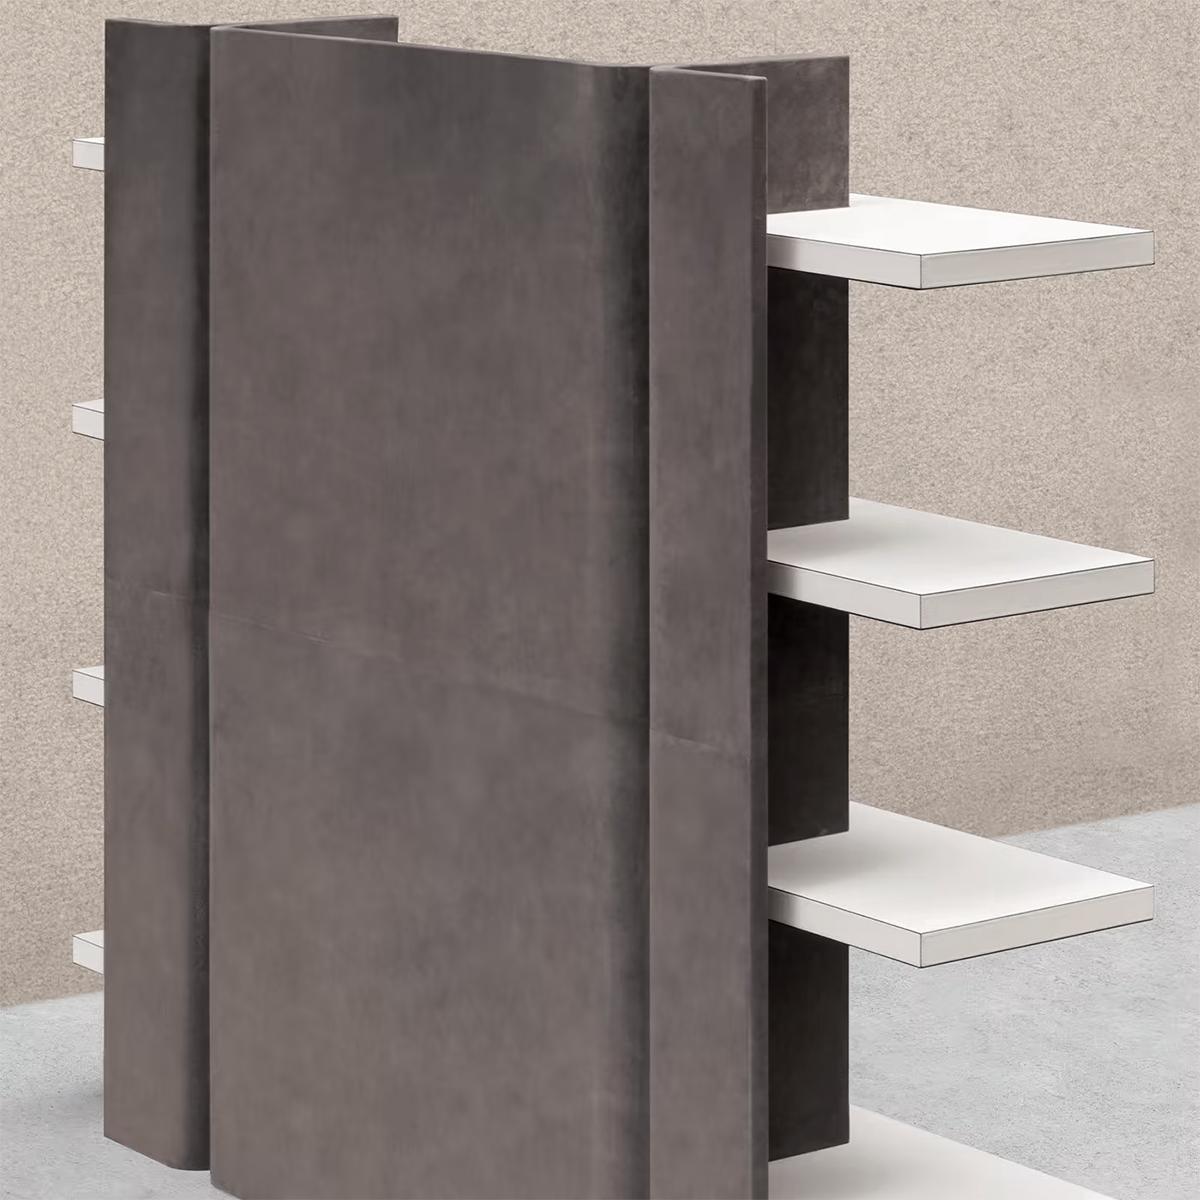 Bücherregal Romi Leder mit Holzstruktur, mit allen Strukturen 
mit grauem Wildleder bezogen und mit 4 Einlegeböden, die mit
weißes genarbtes Kalbsleder.